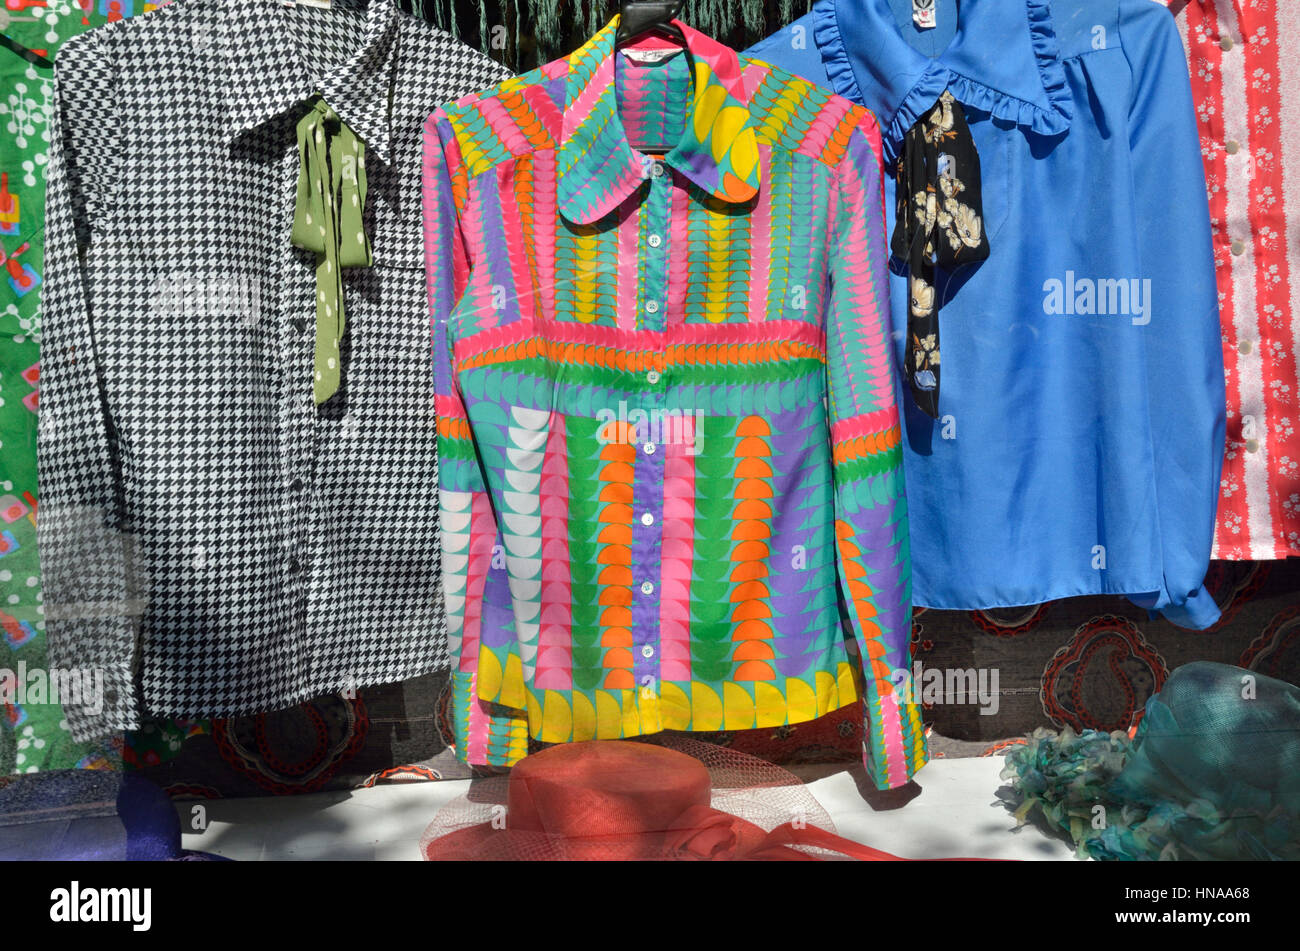 Multicolore, donna di camicetta in un negozio la finestra di visualizzazione Foto Stock